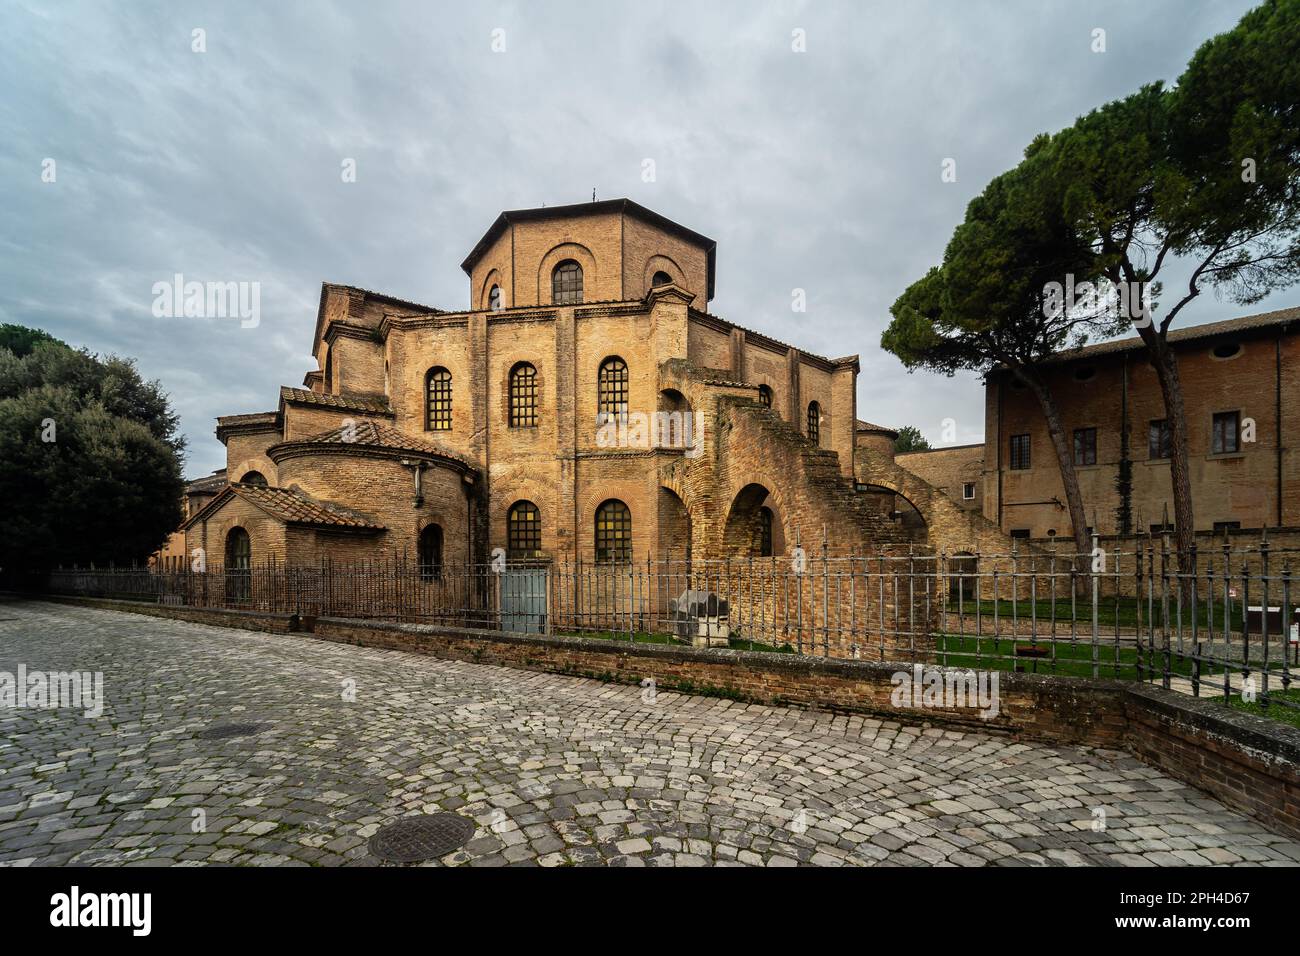 La Basilica di San vitale a Ravenna, Emilia-Romagna, Italia - una monumentale chiesa in stile tardo antico romano e bizantino costruita tra il 526 e il 547 Foto Stock